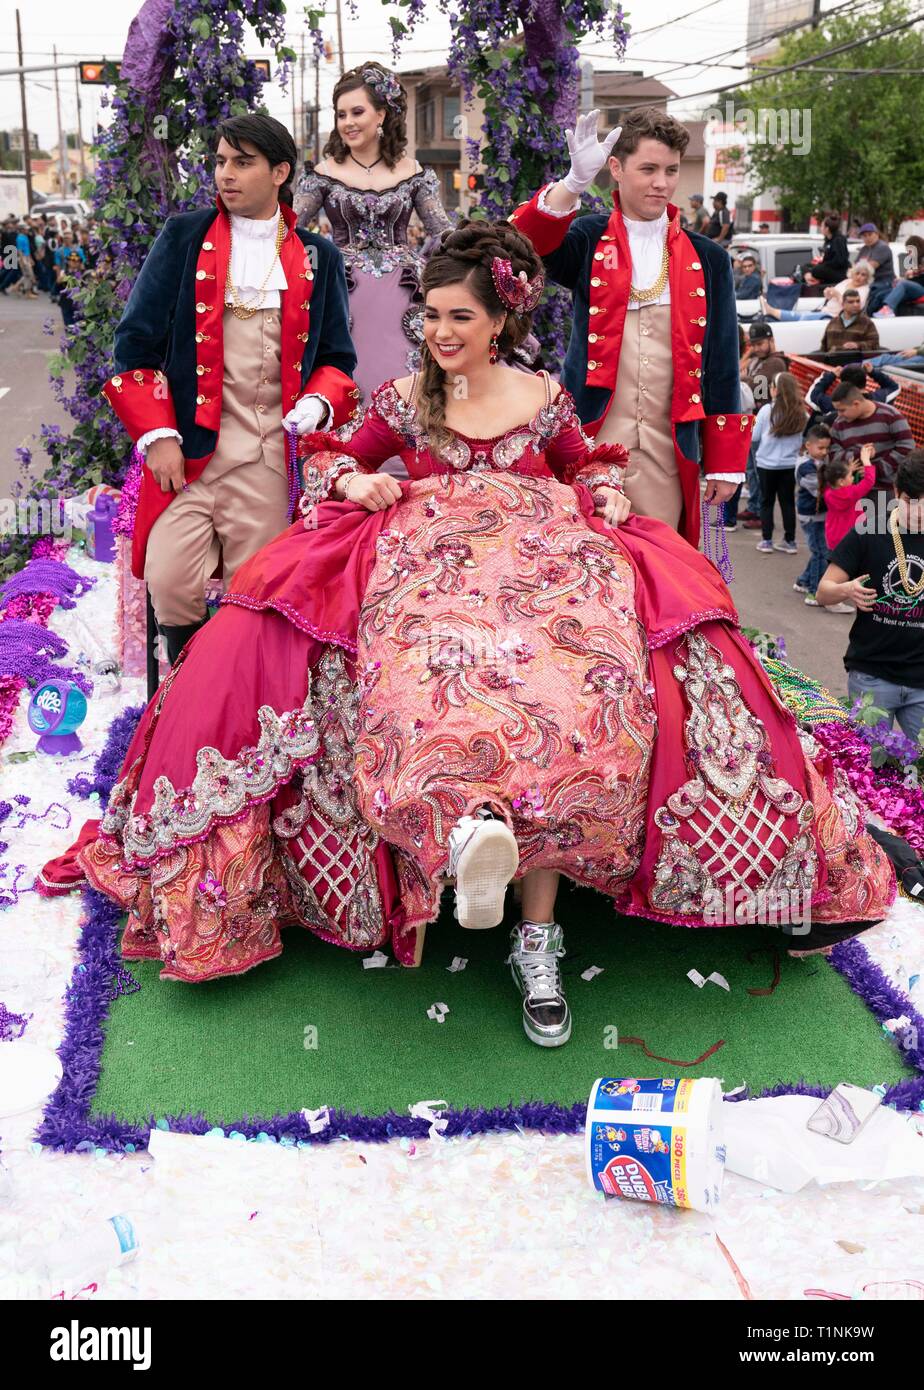 Lokale Debütantinnen und ihre Begleitpersonen tragen aufwendigen Kostümen, beim Reiten auf einem Float bei Washington's Birthday Celebration Parade in Laredo, TX USA Stockfoto